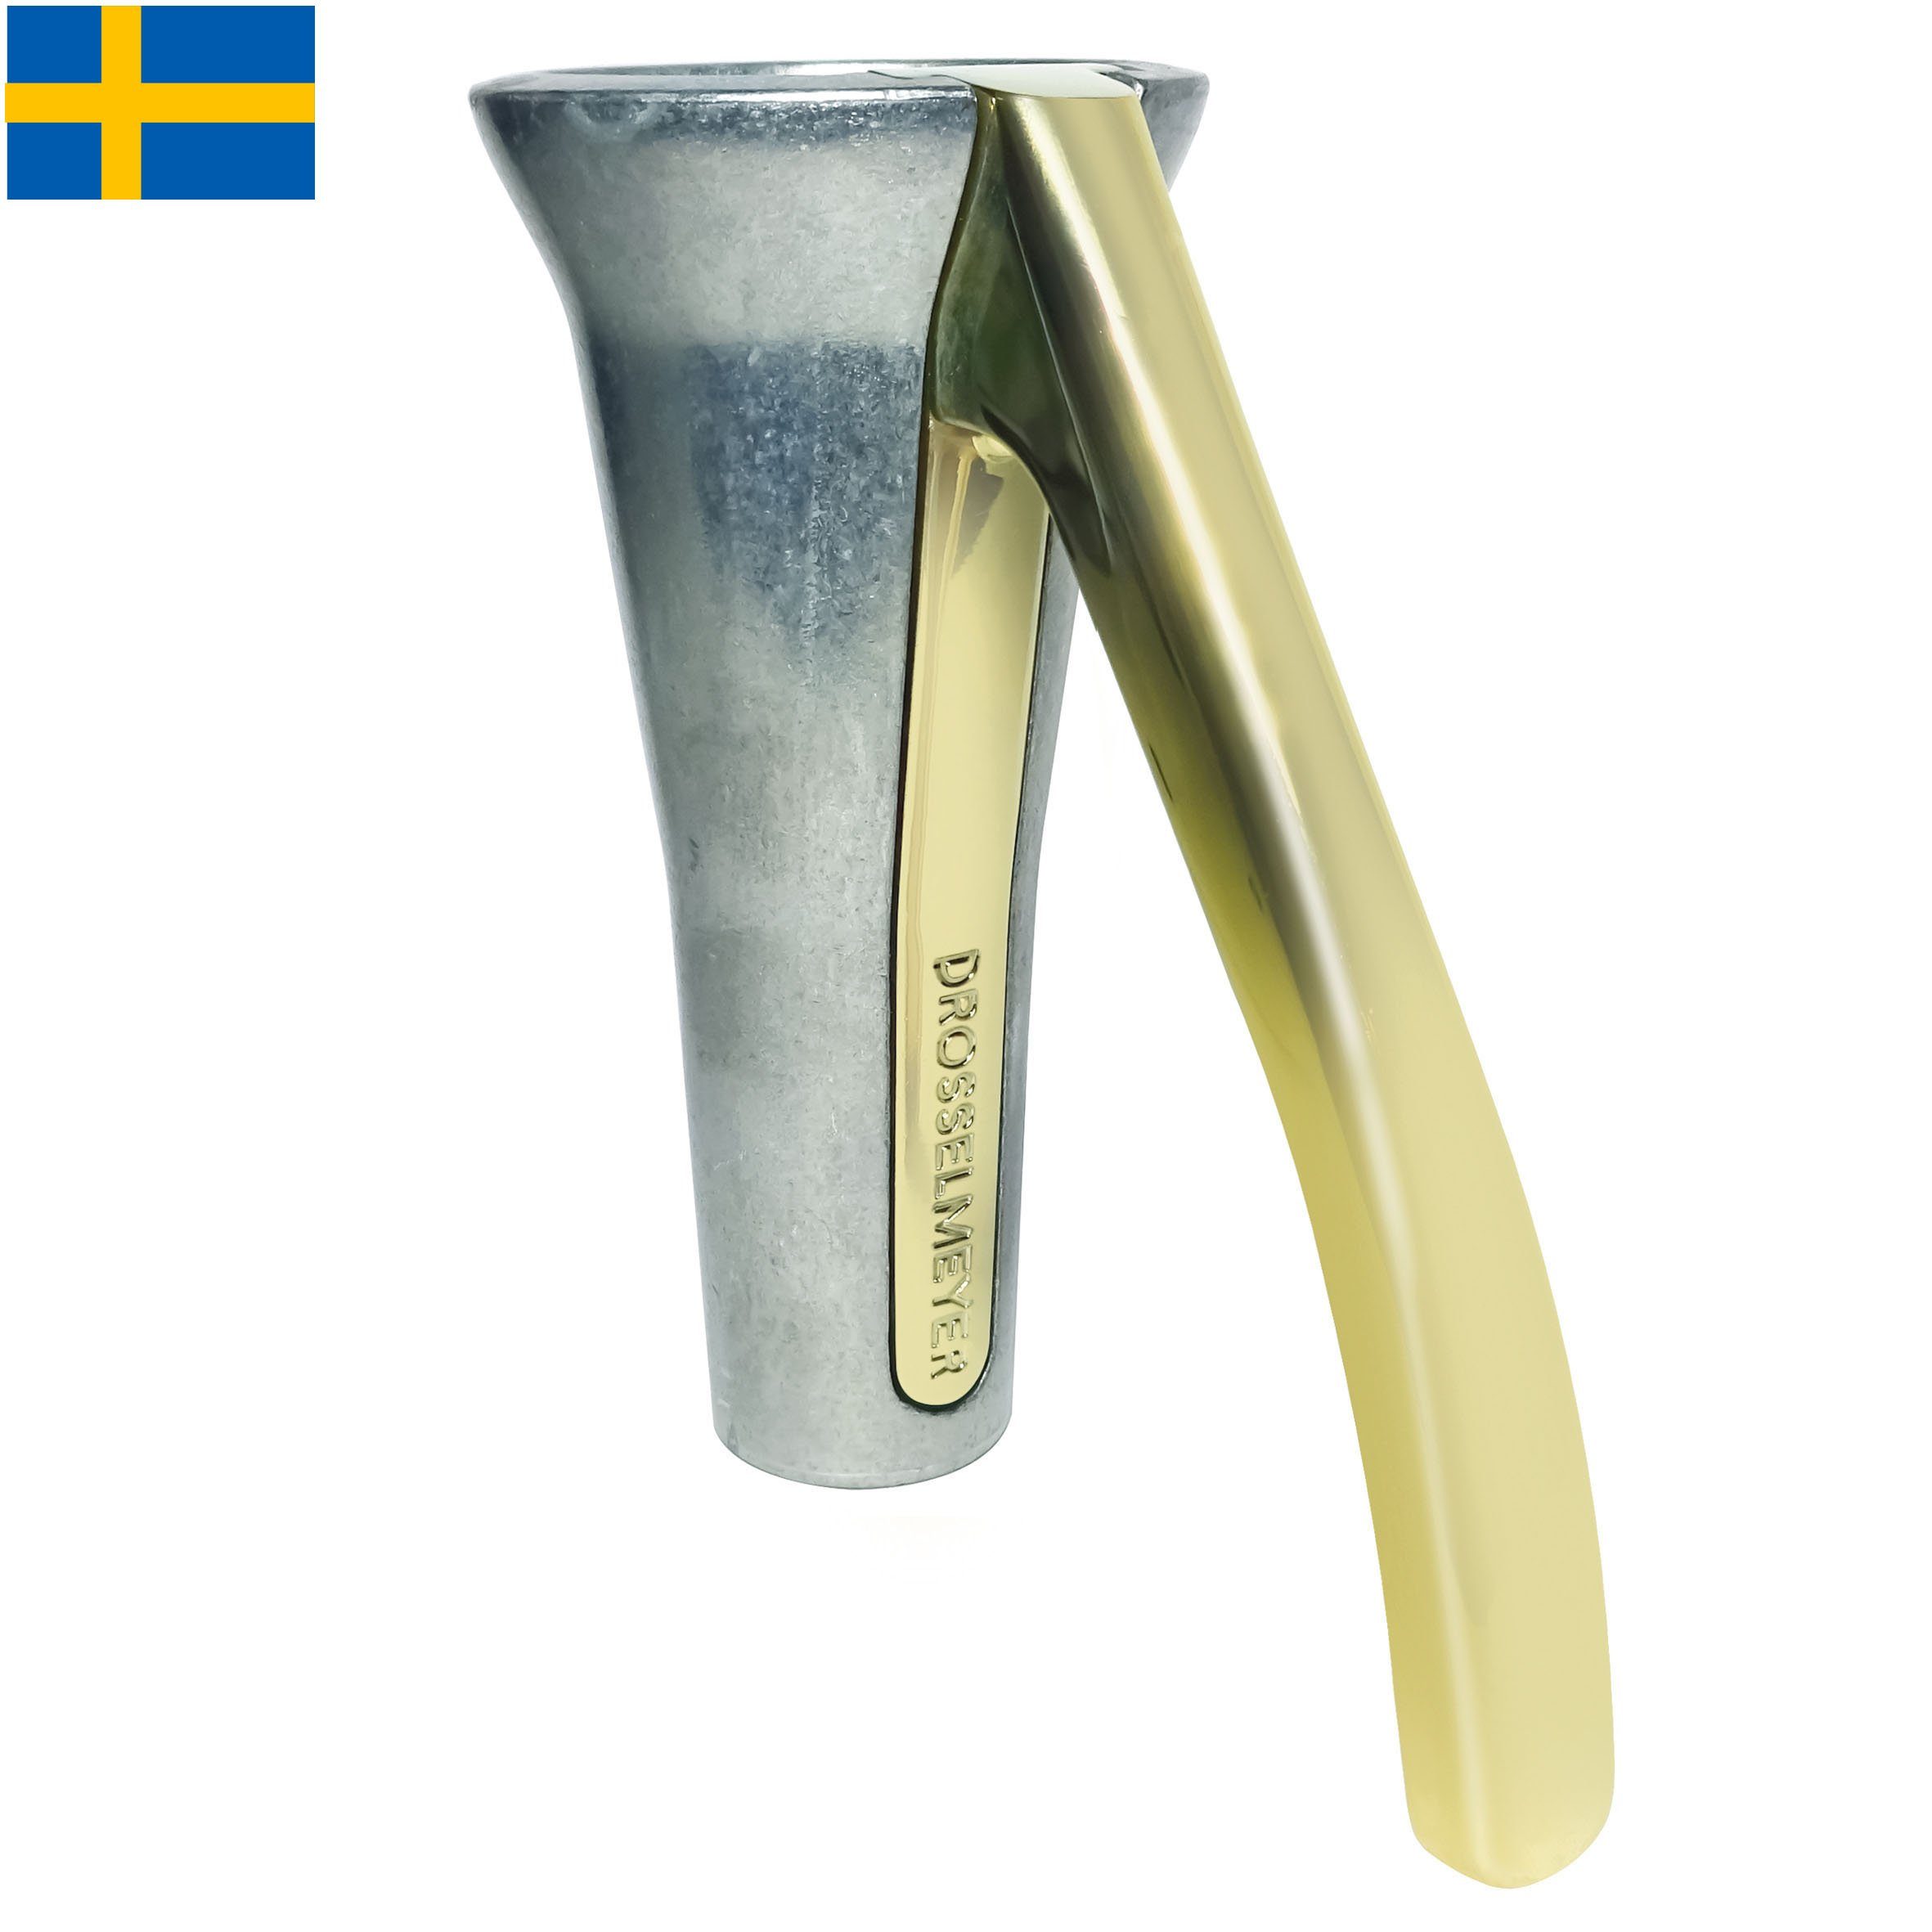 Design patentiertes im fast Nussknacker schwedischen - jede eleganten knackt Drosselmeyer Hebelkonzept Nuss - Nussknacker Natur/Gold,